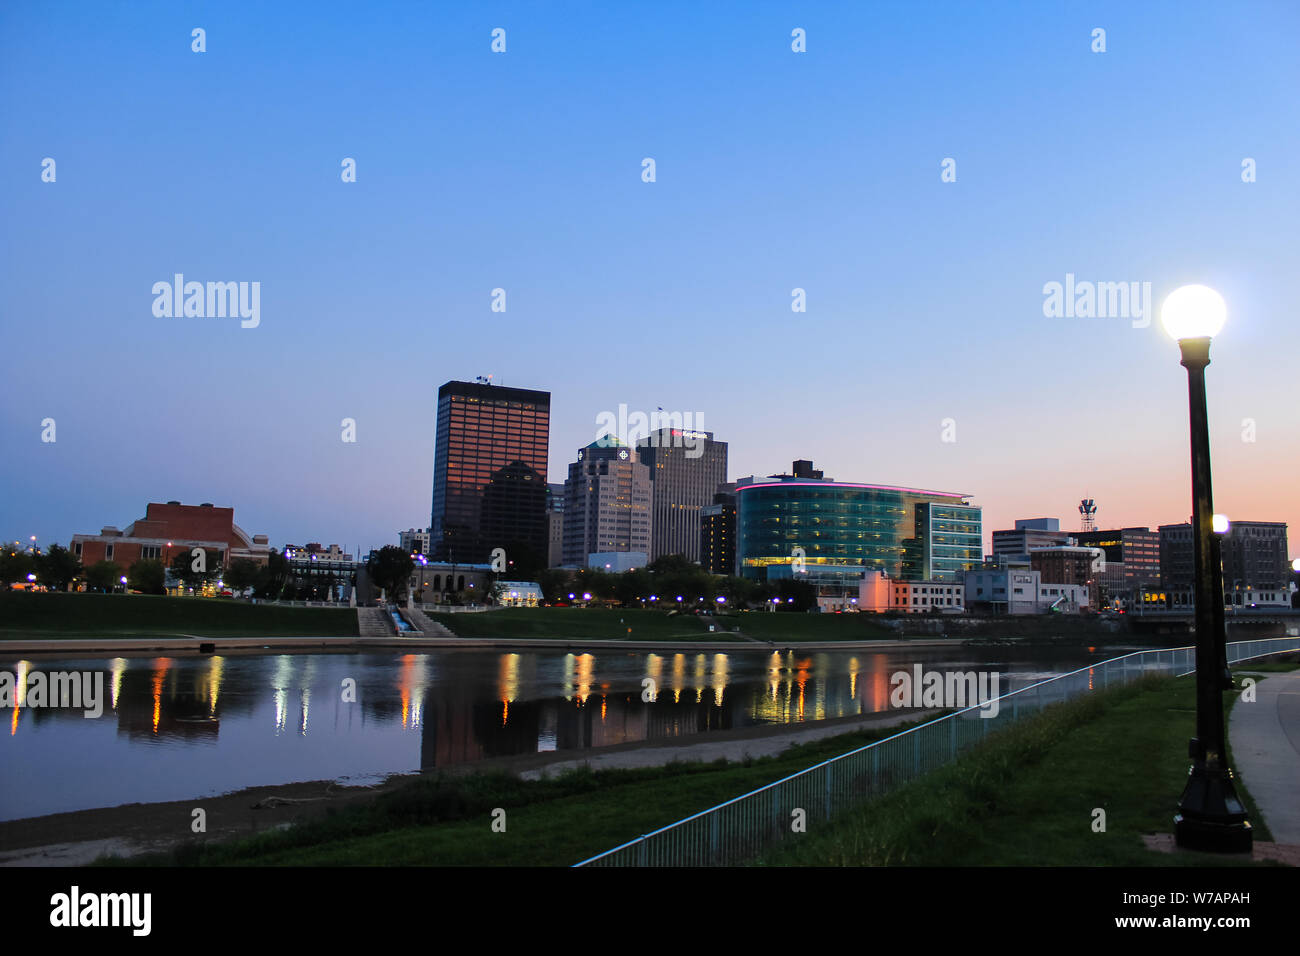 Dayton, Ohio skyline at dusk Stock Photo